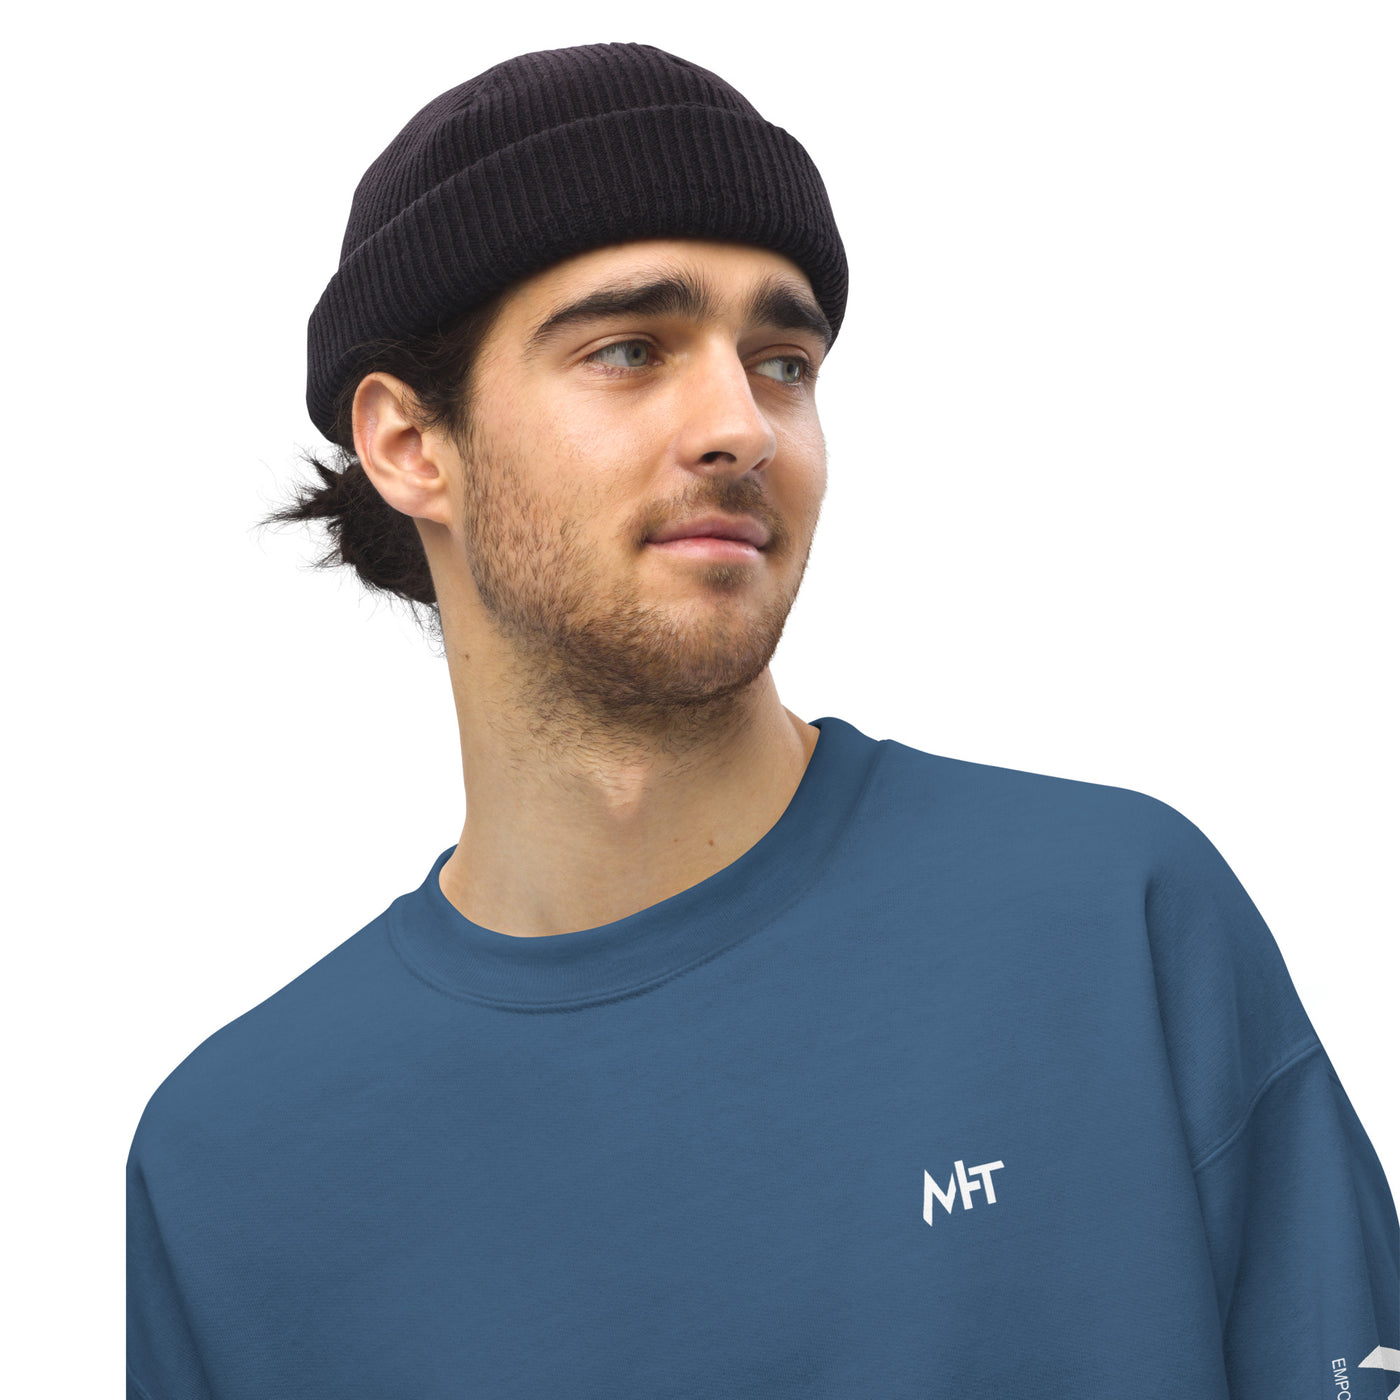 Mecha Guardian - Unisex Sweatshirt ( Back Print )